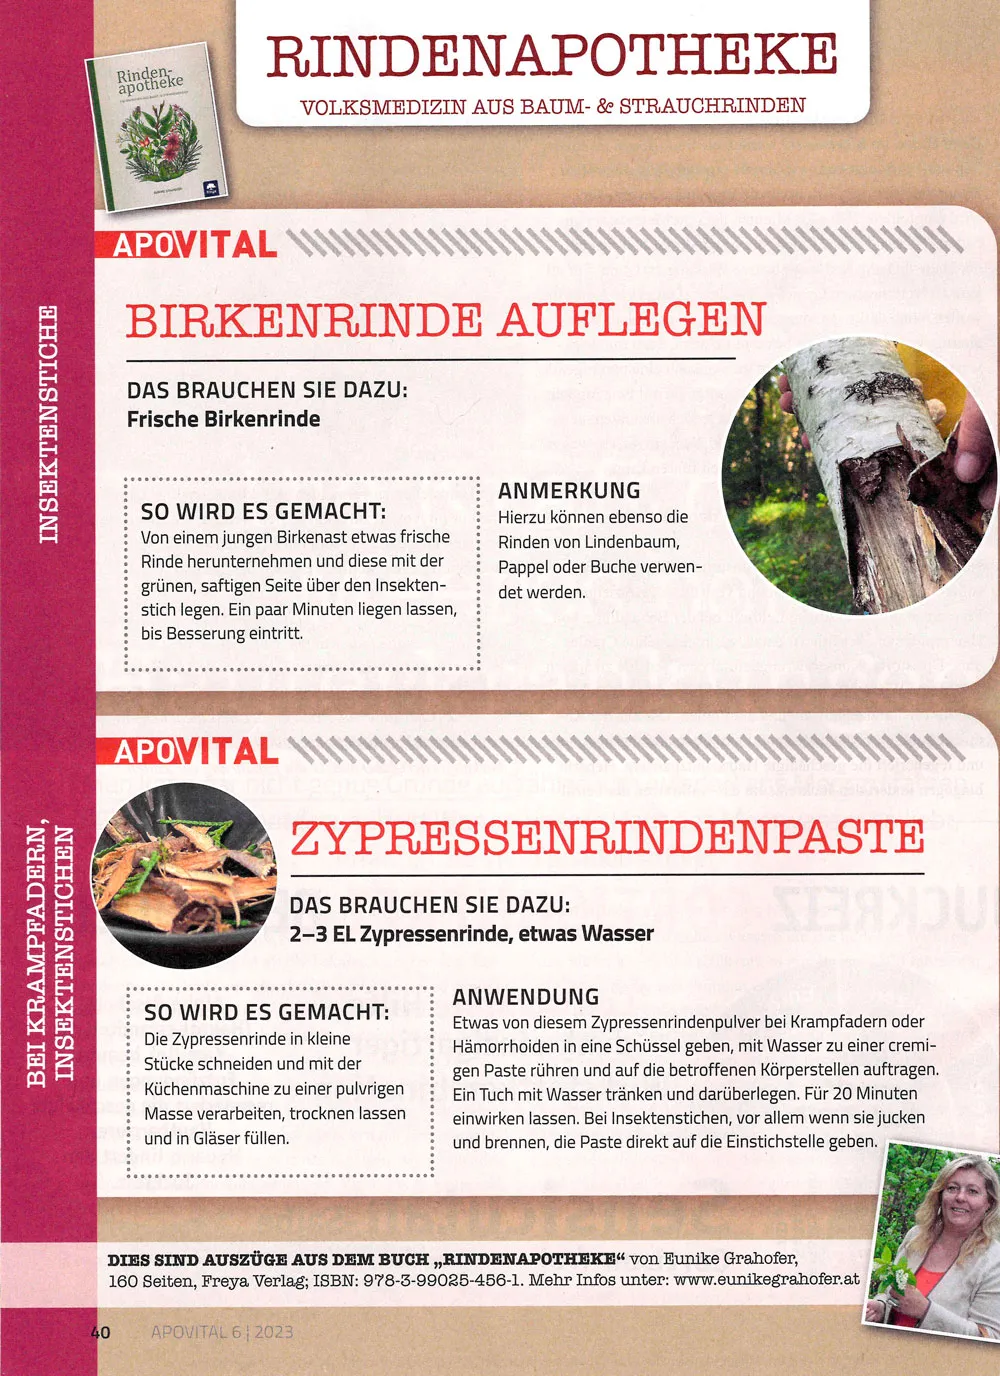 Scan Presseartikel von Eunike Grahofer aus der Apovital mit der Anleitung wie man Birkenrinde auflegtu und dem Rezept für die Zypressenrindenpaste